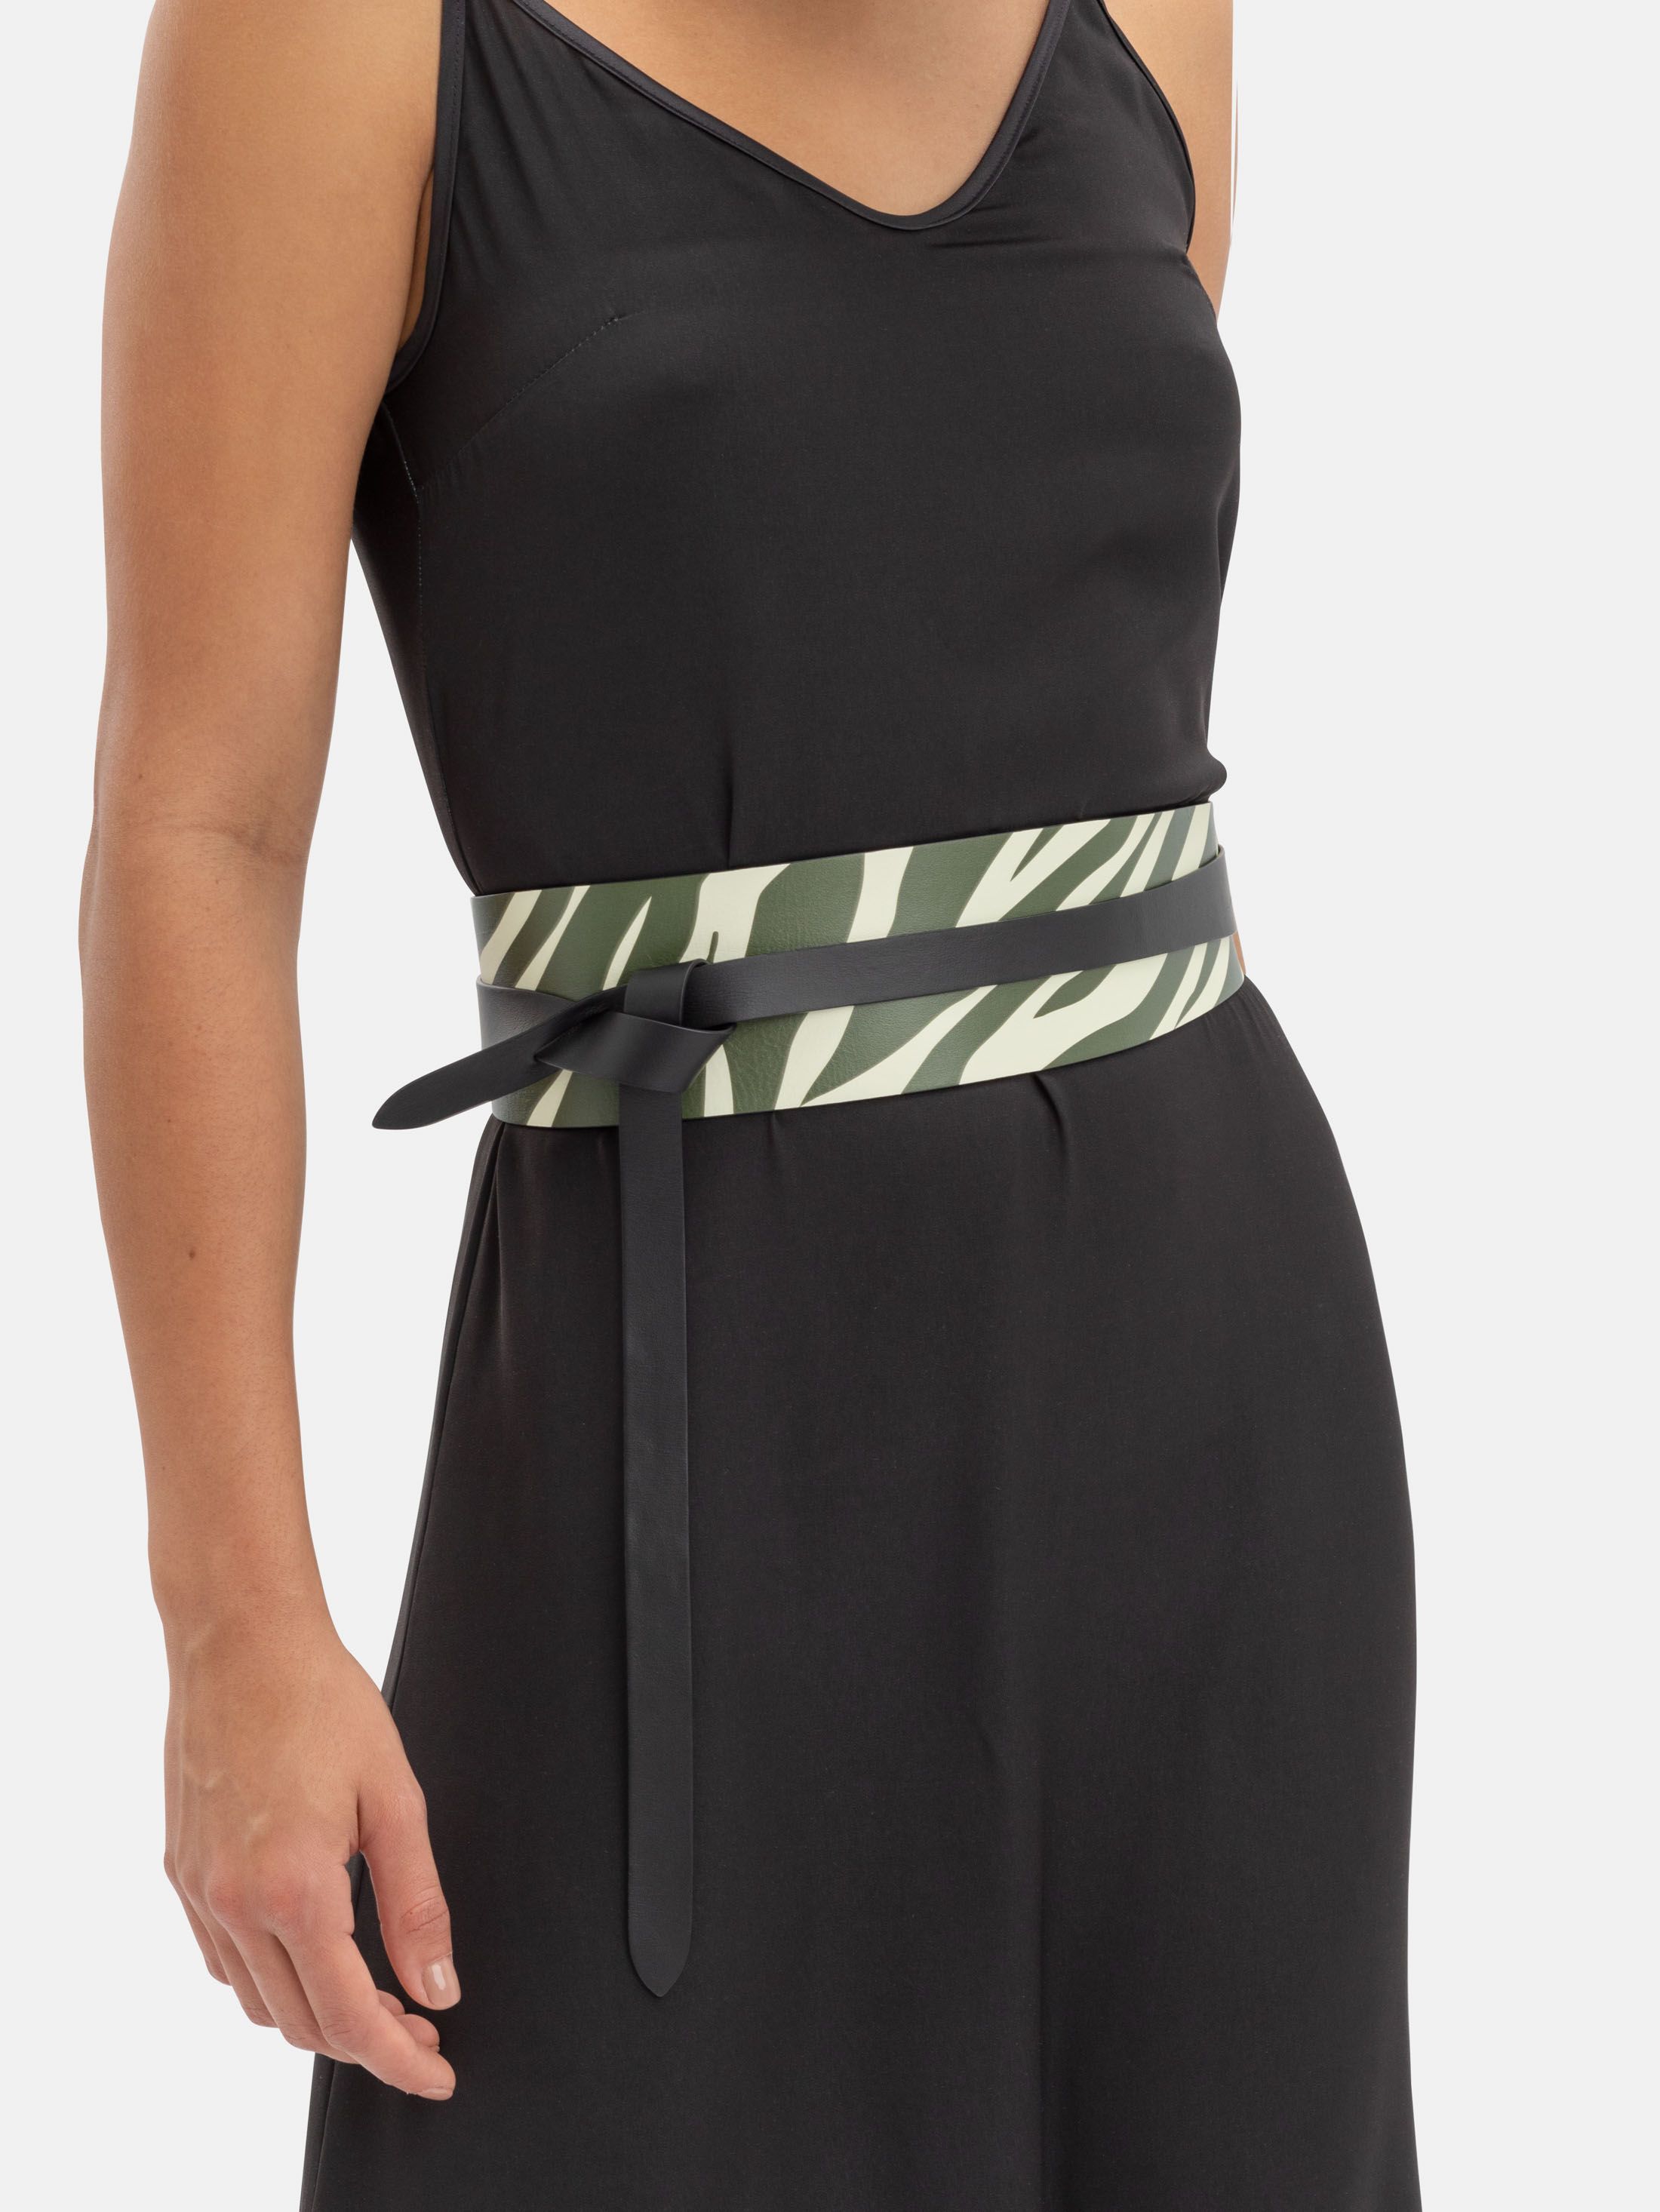 custom dress belt on model